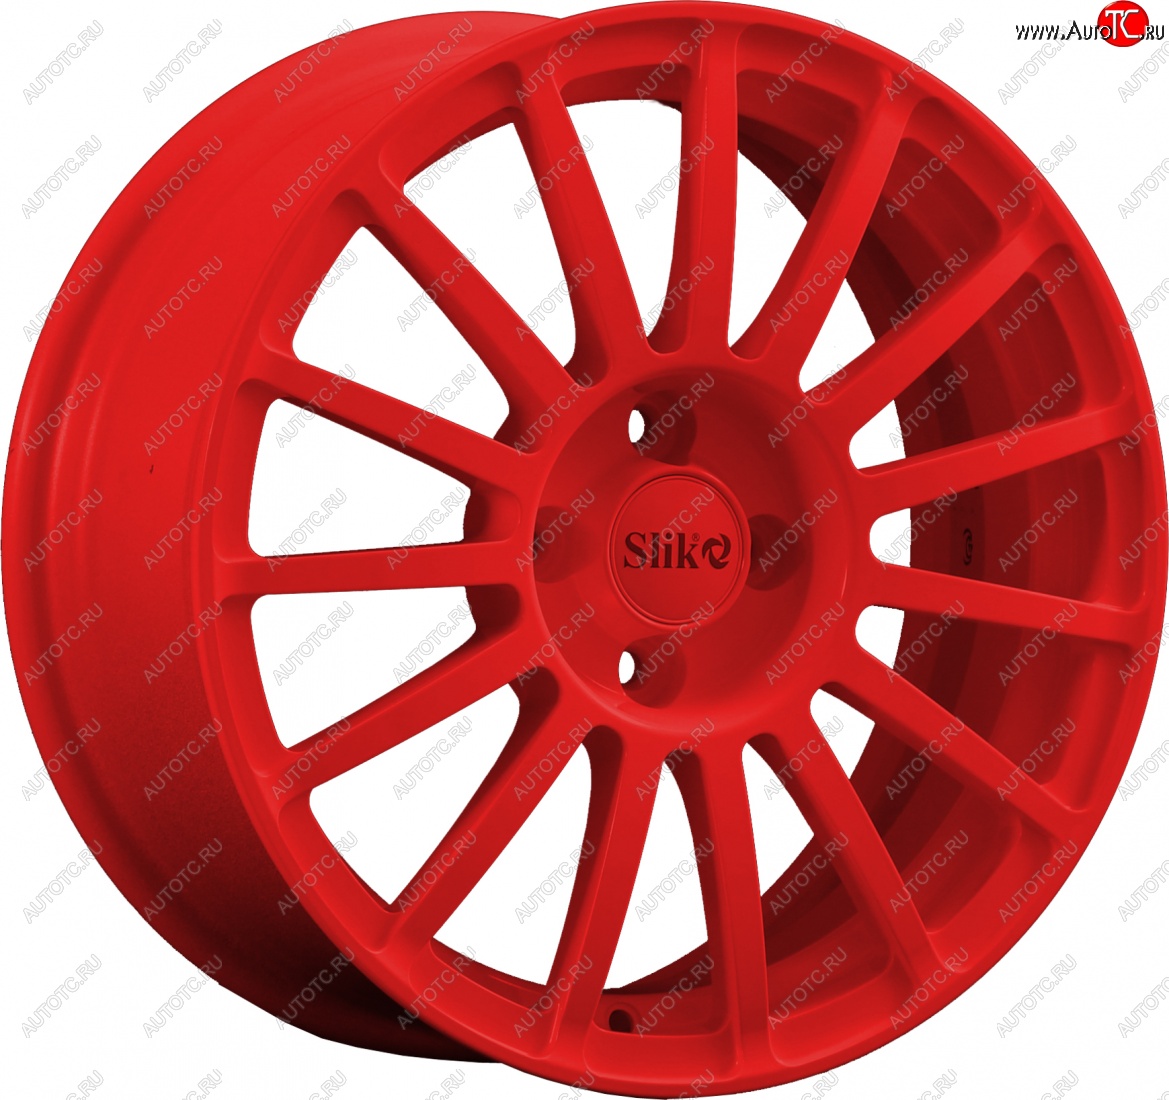 18 999 р. Кованый диск Slik classik R16x6.5 Красный (RED) 6.5x16   (Цвет: RED)